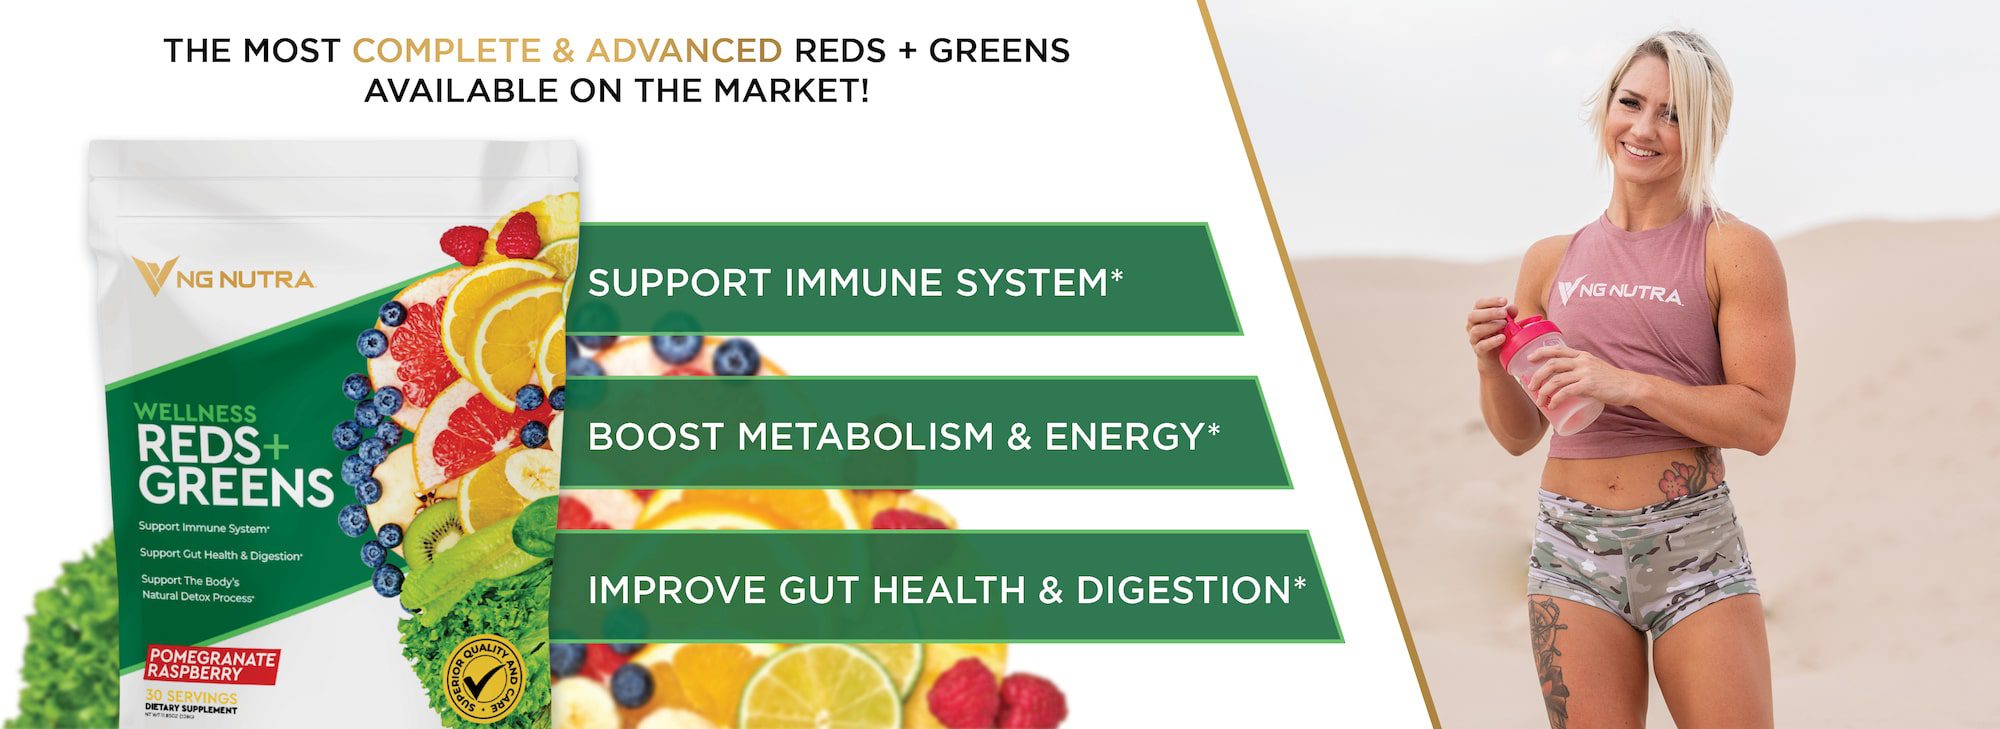 Wellness Reds + Greens